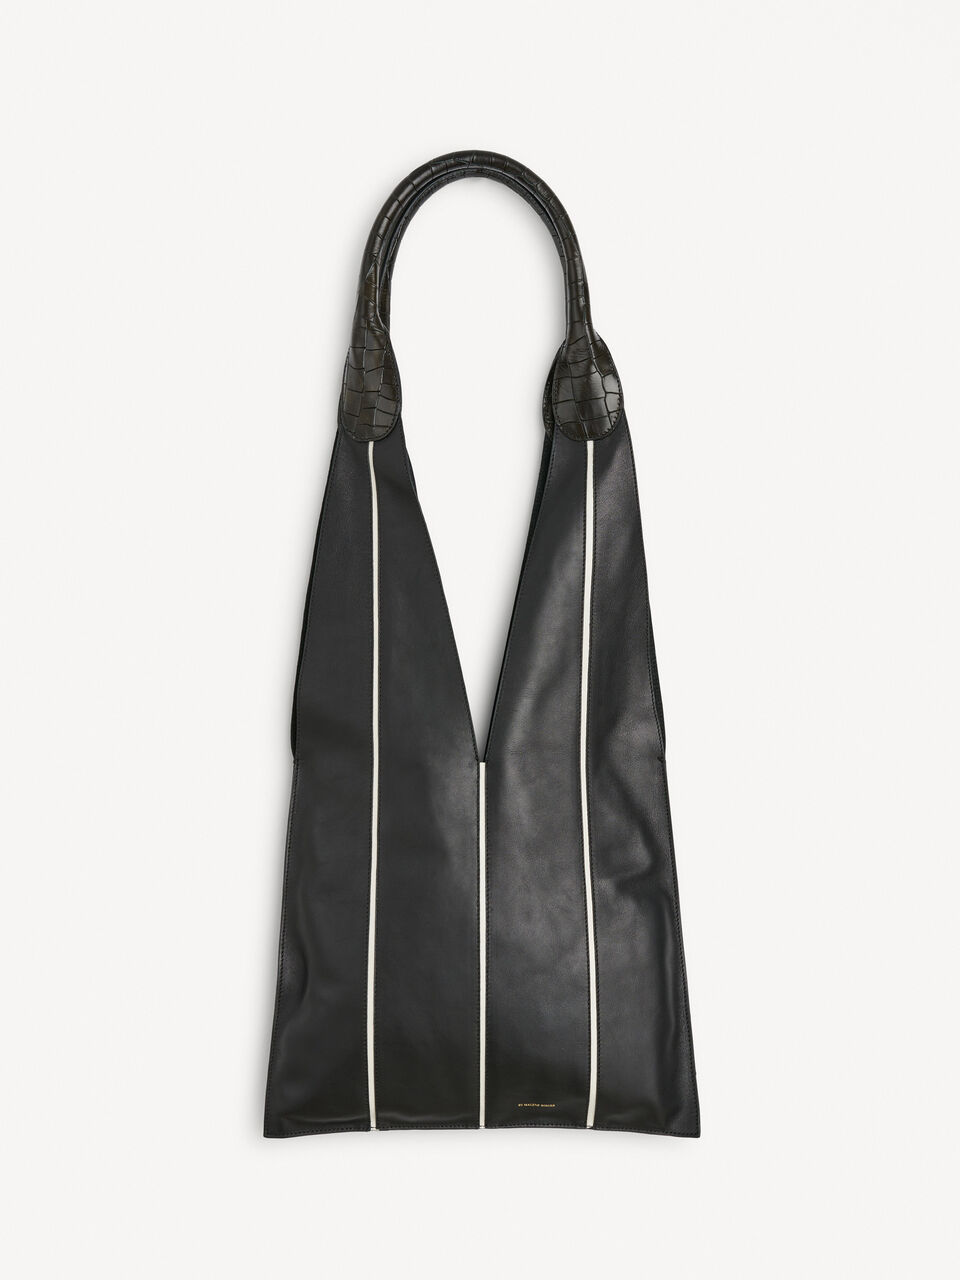 Iyla tote bag - Buy online